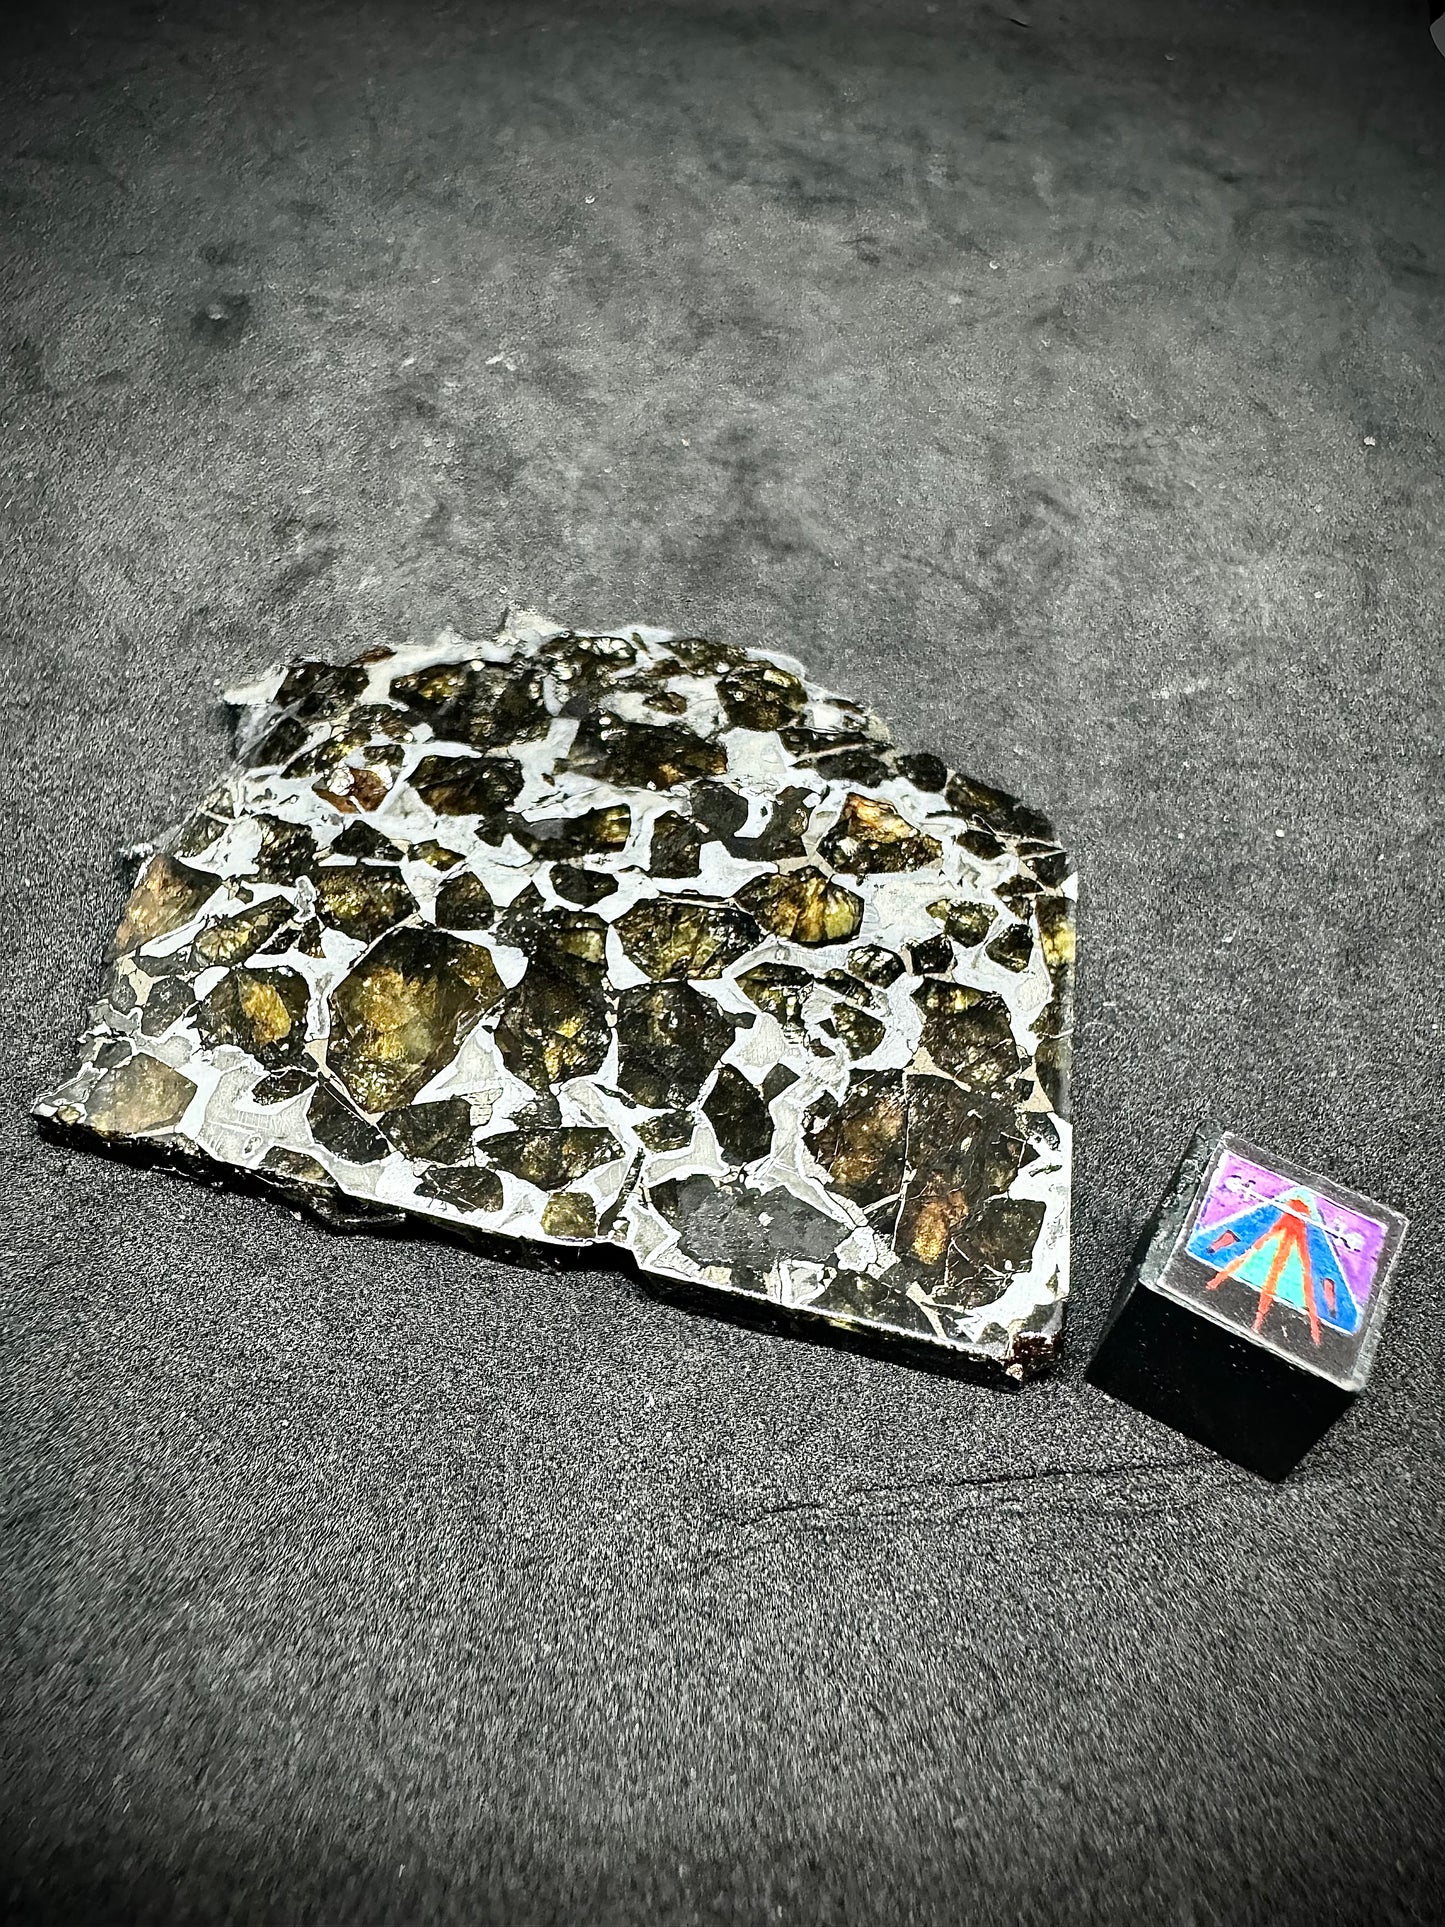 Brahin Pallasite Meteorite - 35.2g